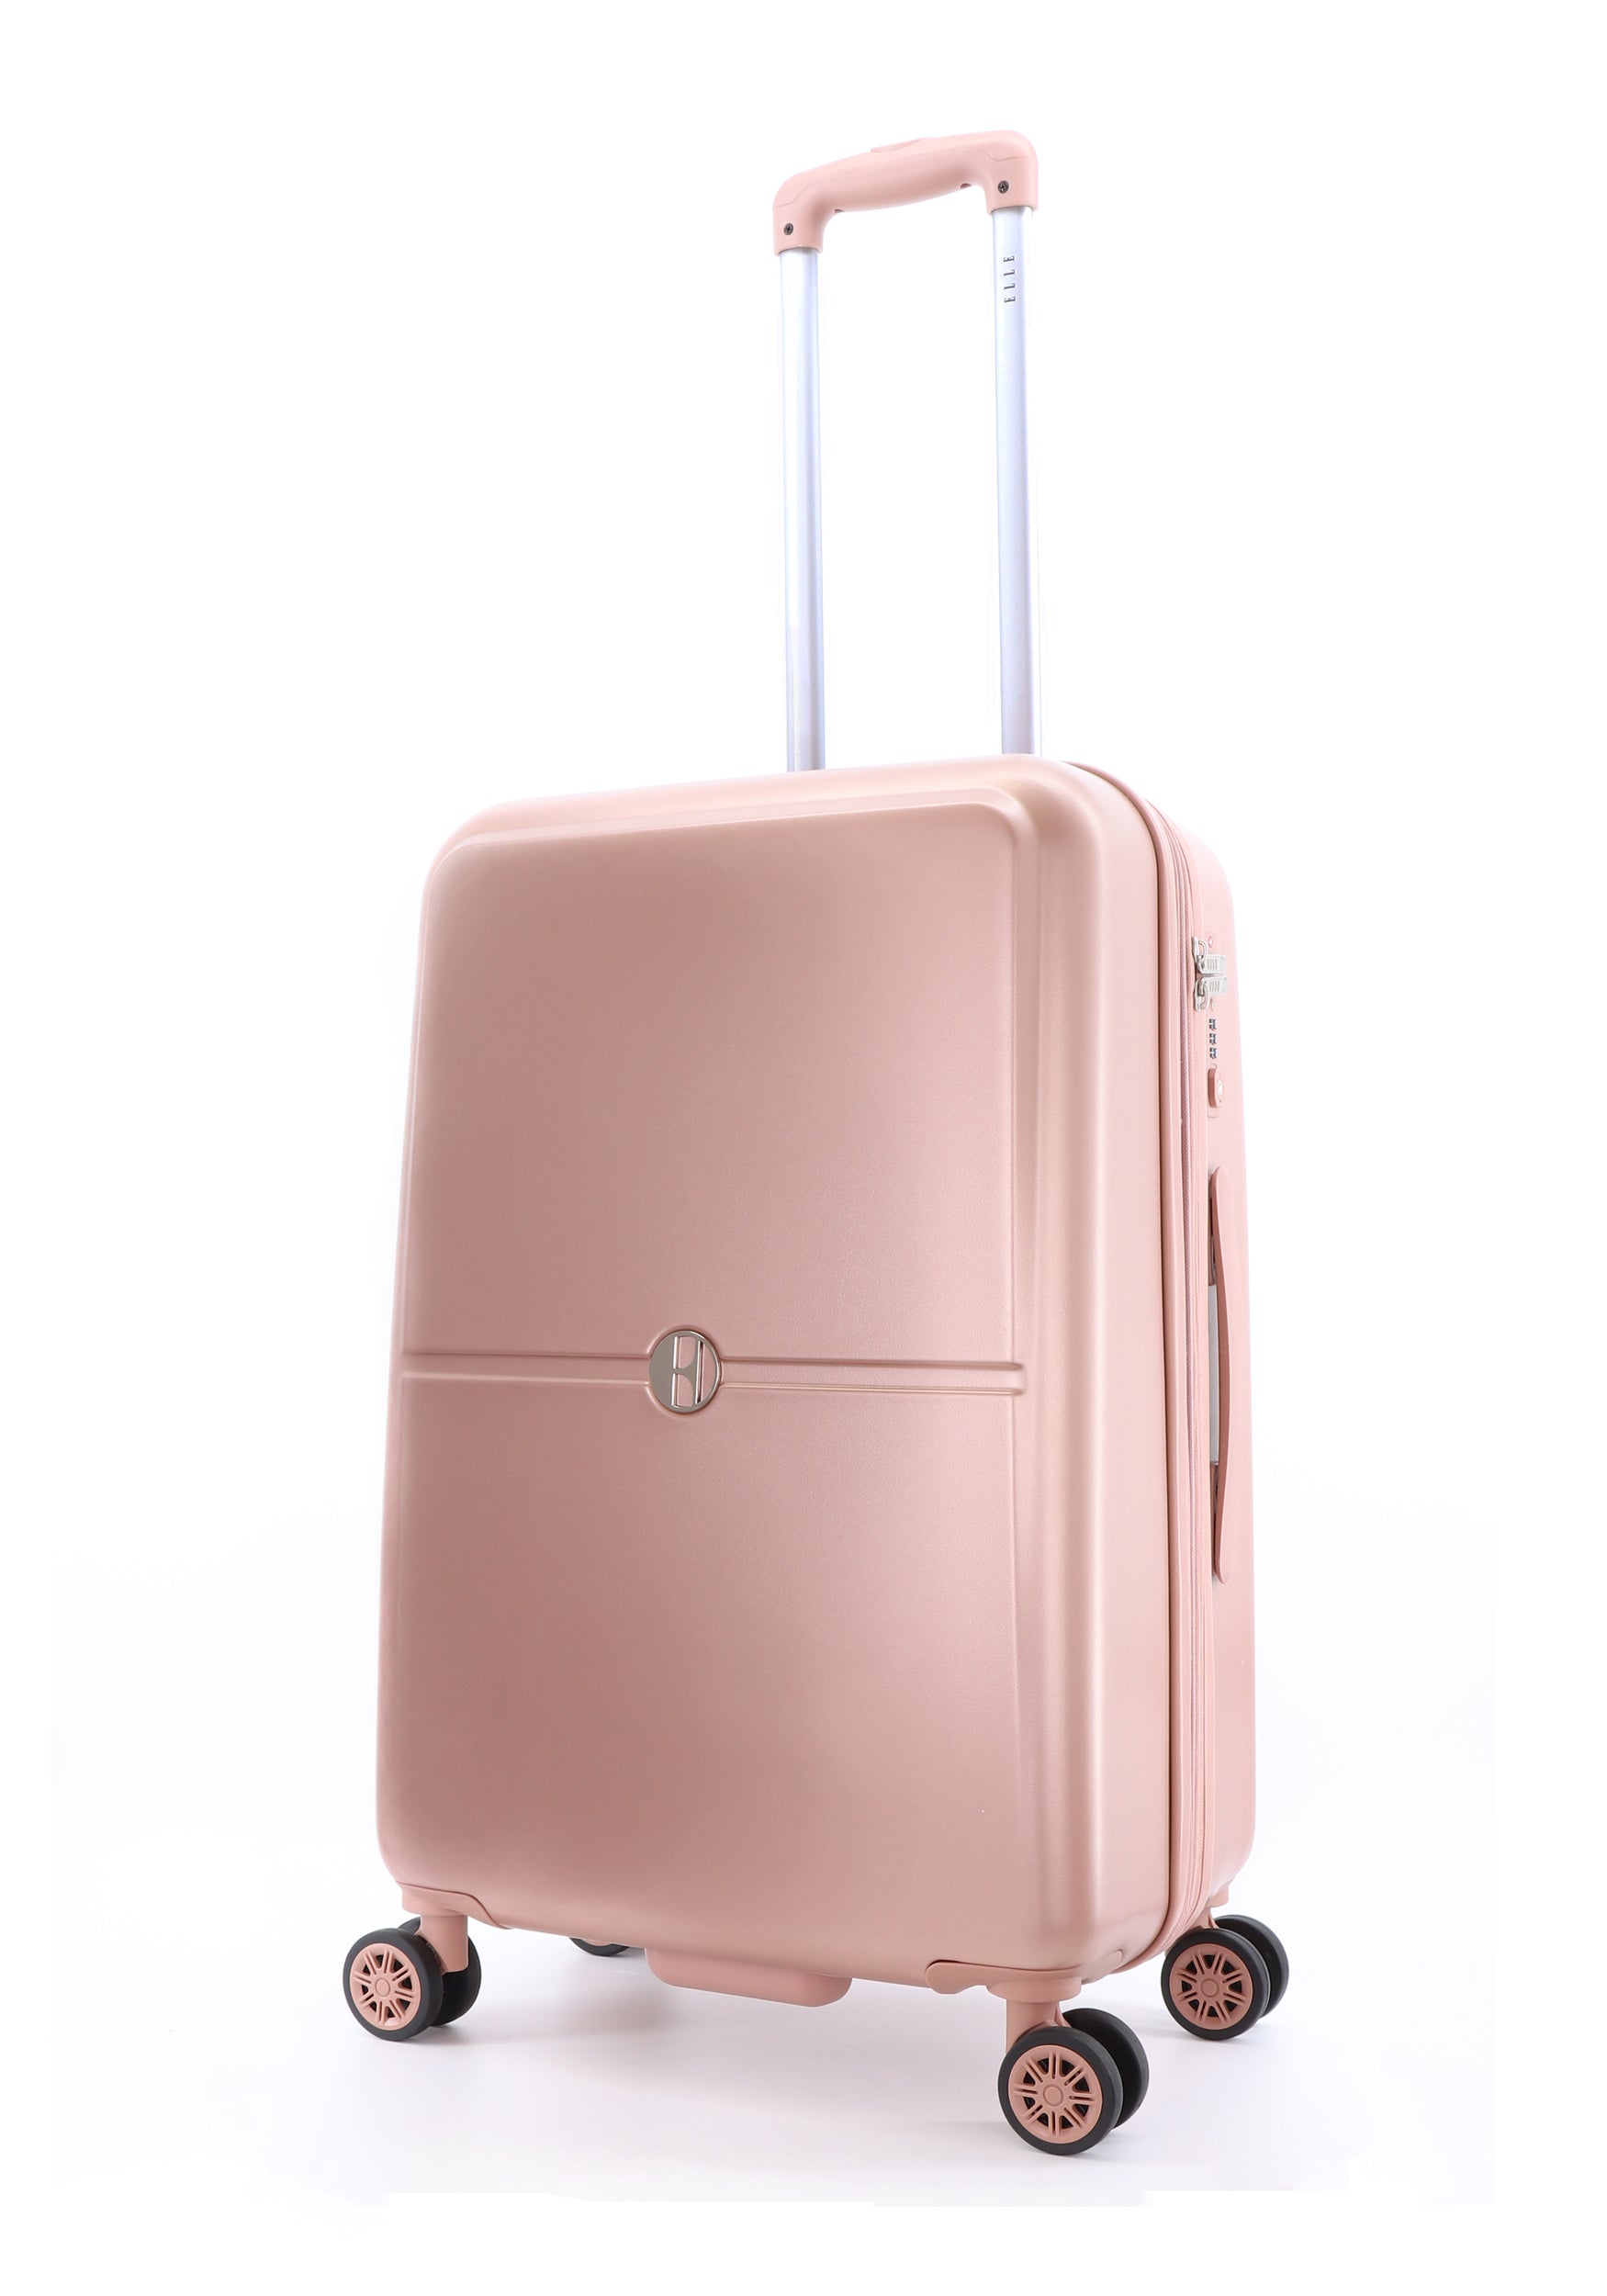 Wiskundige Zeeman Kwaadaardig ELLE Chic, harde reisbagage roze Suitcase Pink || luggage4u – LUGGAGE 4 U